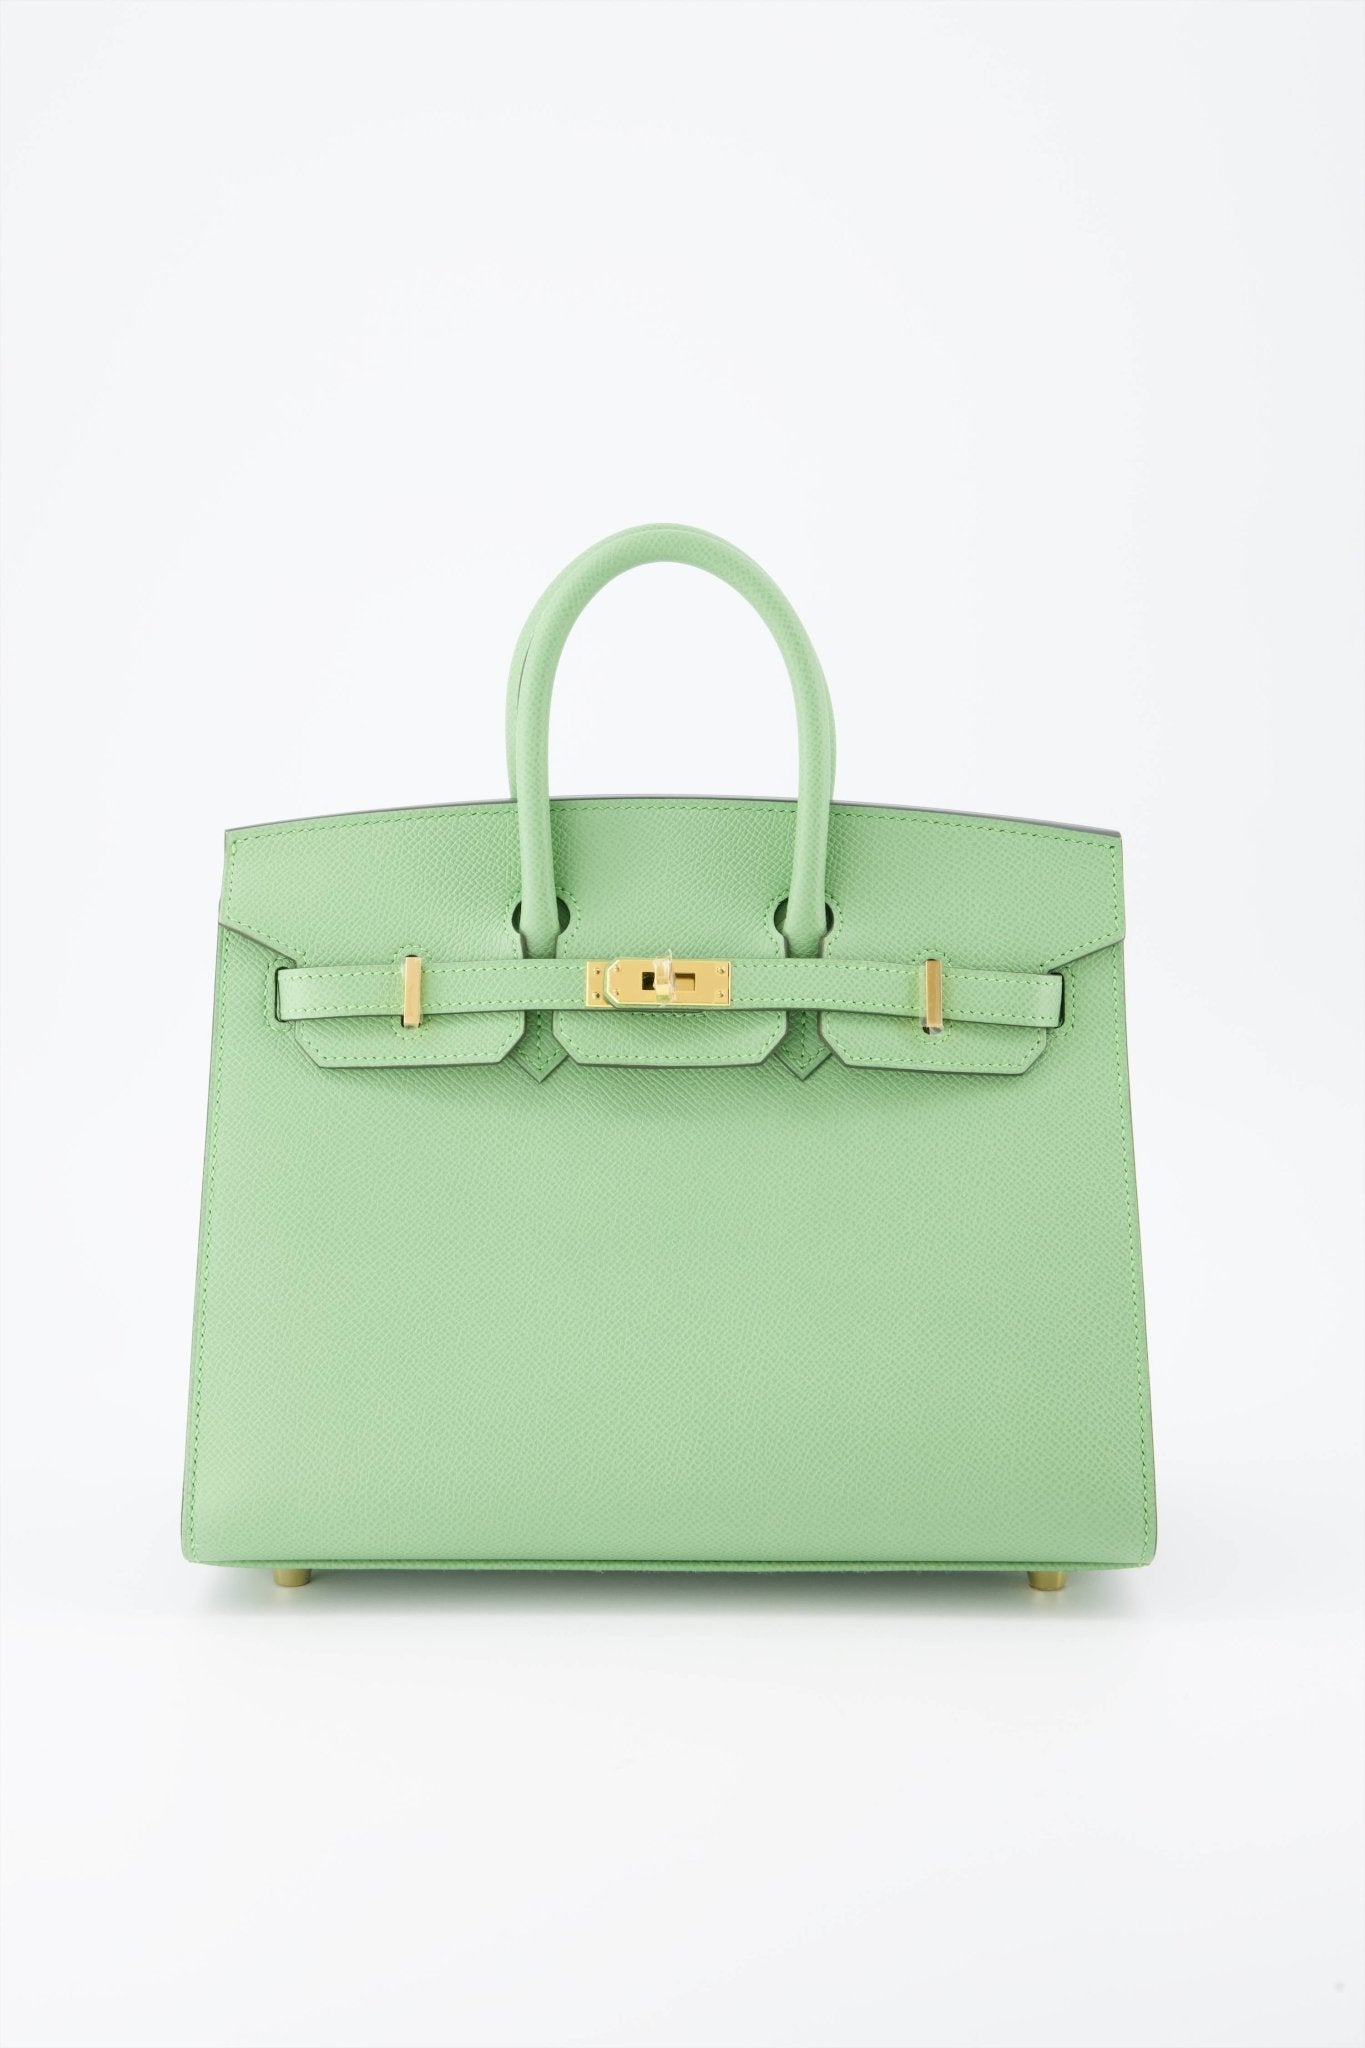 Rare* Hermes Birkin 25 Sellier Handbag Vert Criquet Epsom Leather